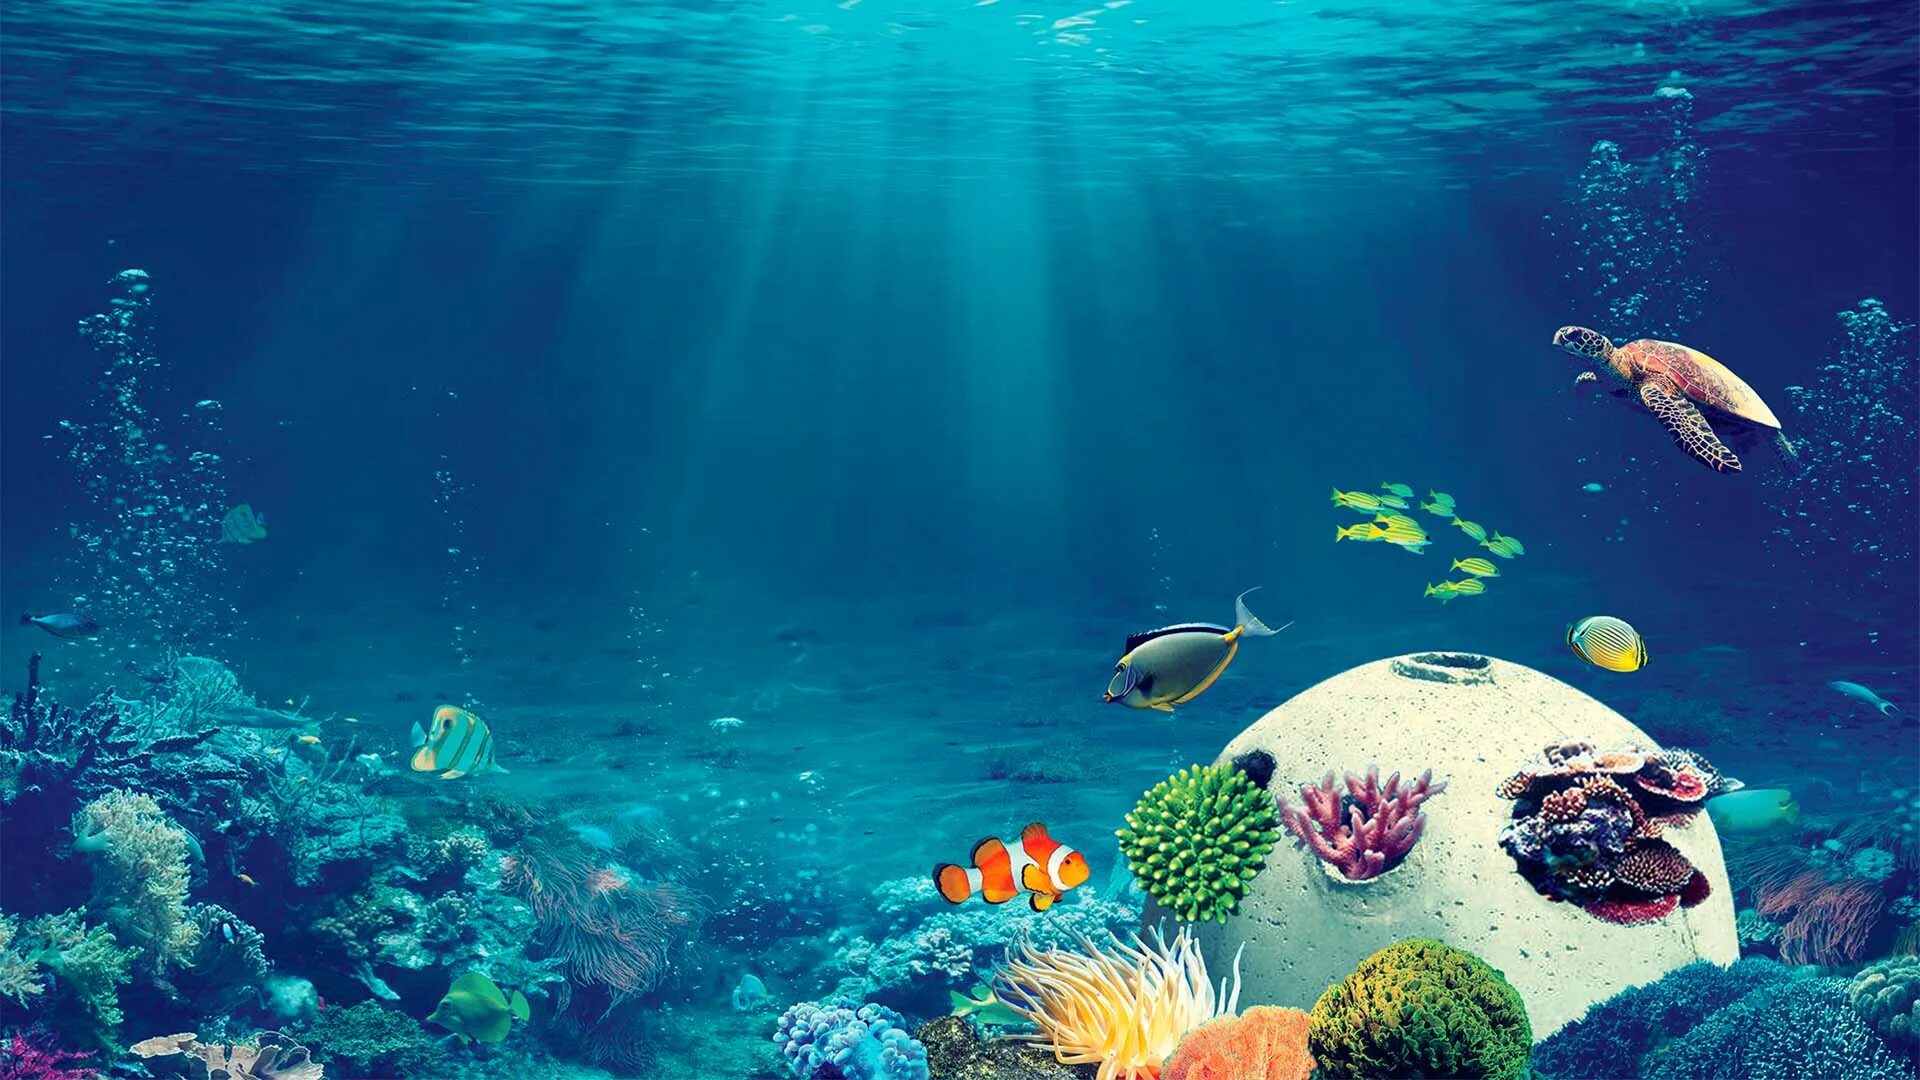 Калуокахина Зачарованный риф. Радости рифа. Обои на рабочий стол коралловый риф. Подводный риф в лучах солнца.